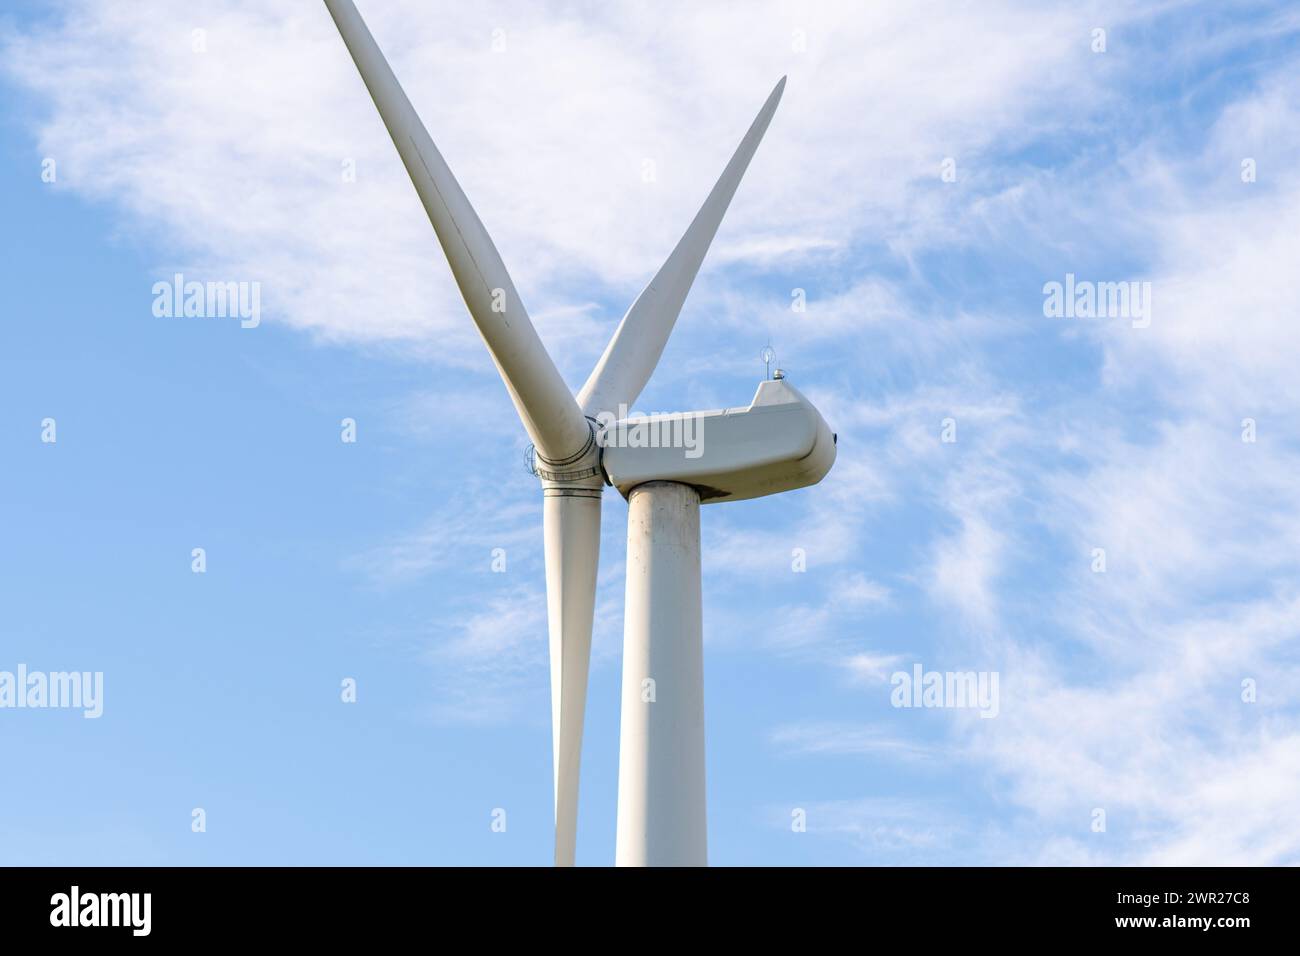 Windmühlenfarm zwischen Feldern und kleinen Bäumen. Europäische Umweltinitiative. Erhaltung von Energie und fossilen Ressourcen. Kein Ökologischer Fußabdruck Stockfoto